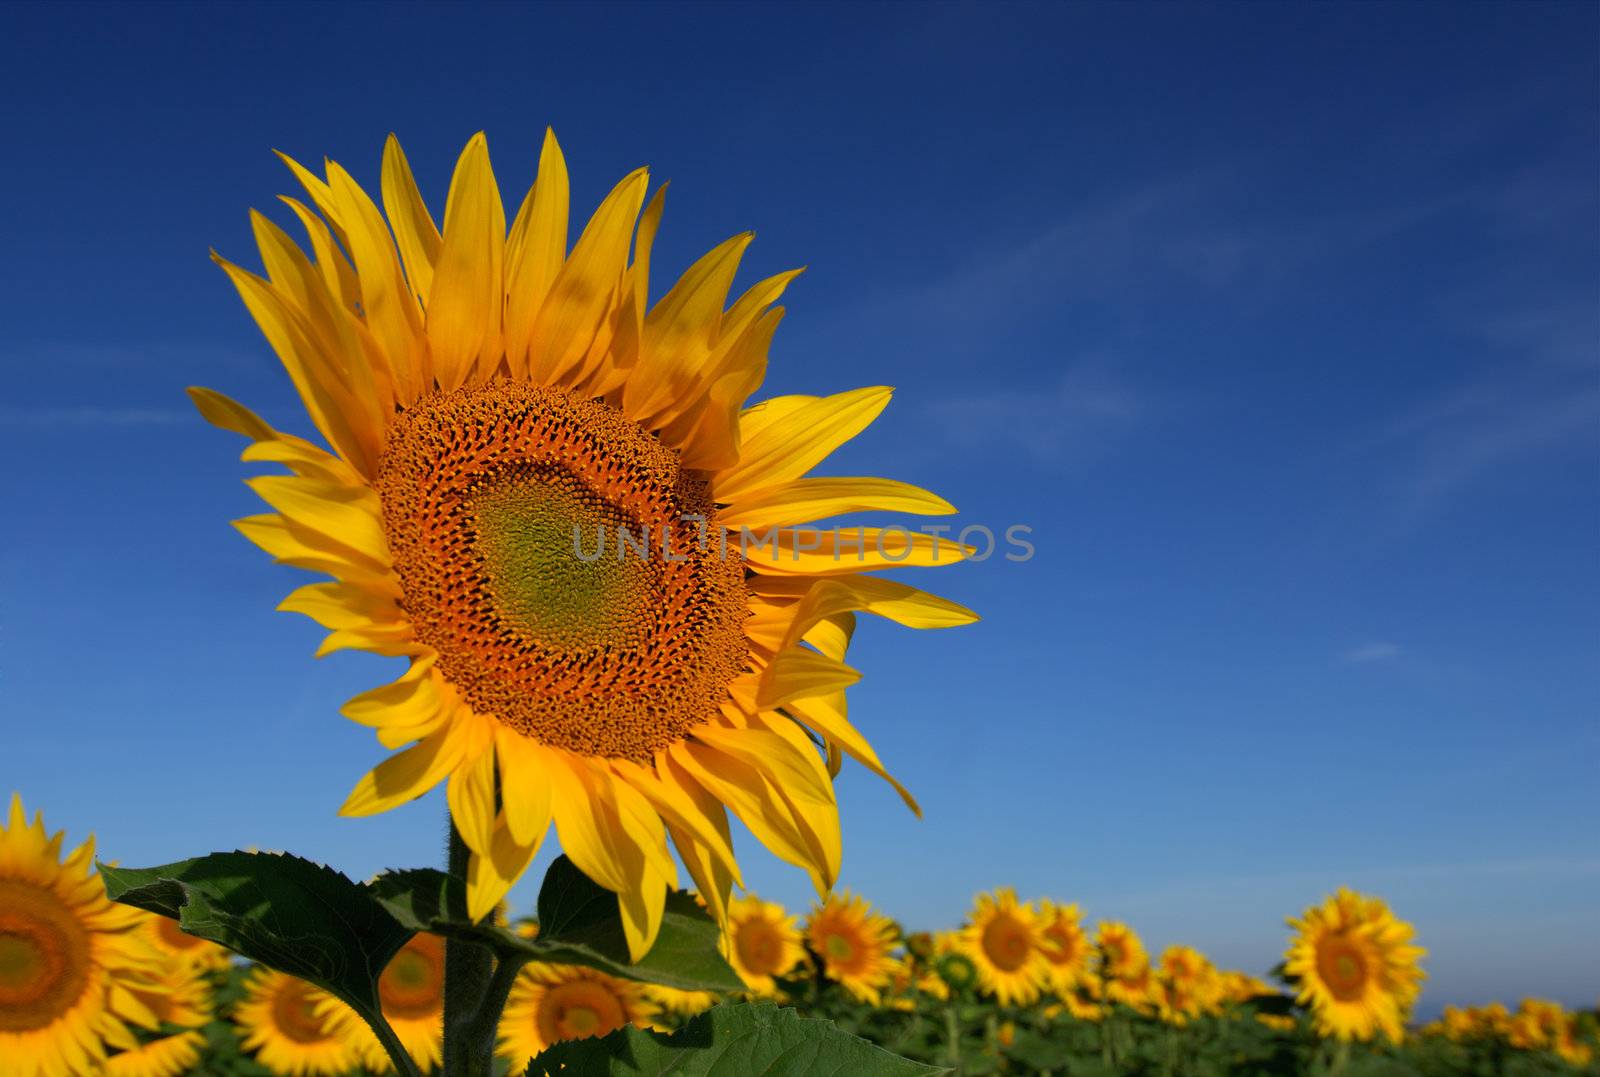 Wild sunflower by akarelias